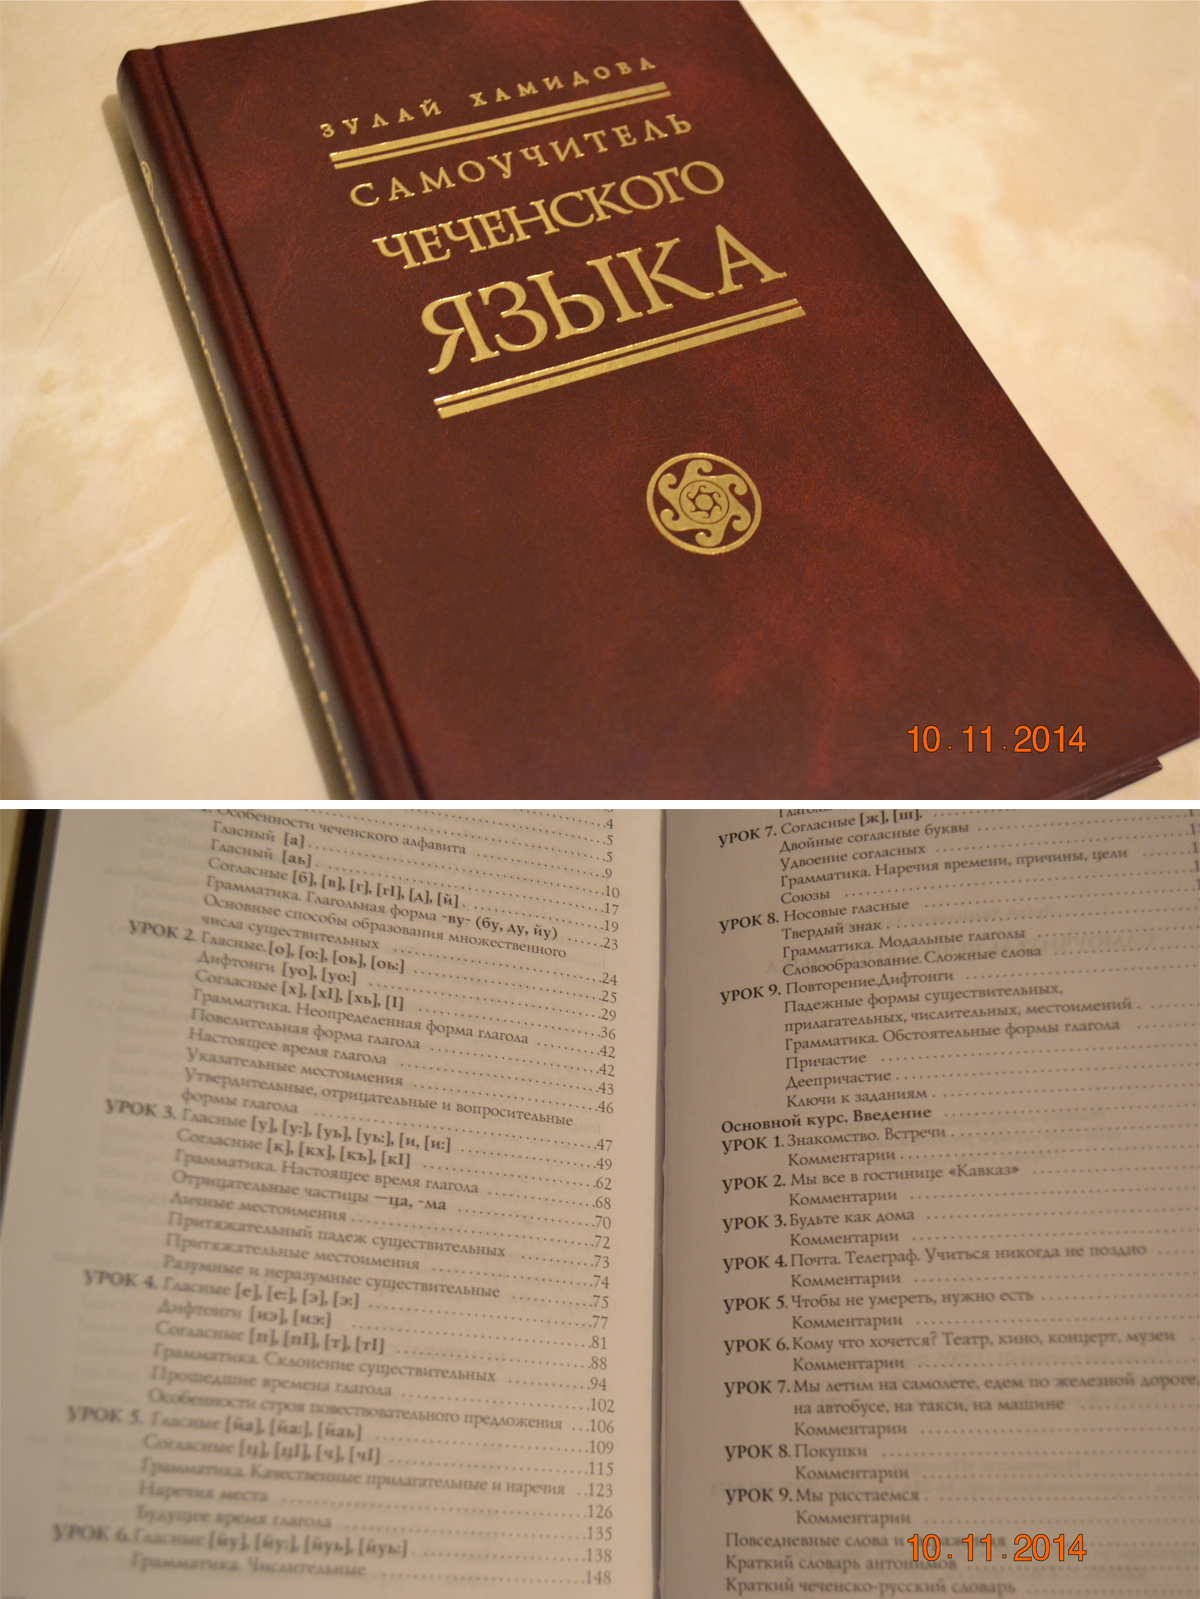 Сколько чеченских языков. Книги для изучения чеченского языка. Книги на чеченском языке. Самоучитель чеченского языка. Изучаем чеченский язык книга.